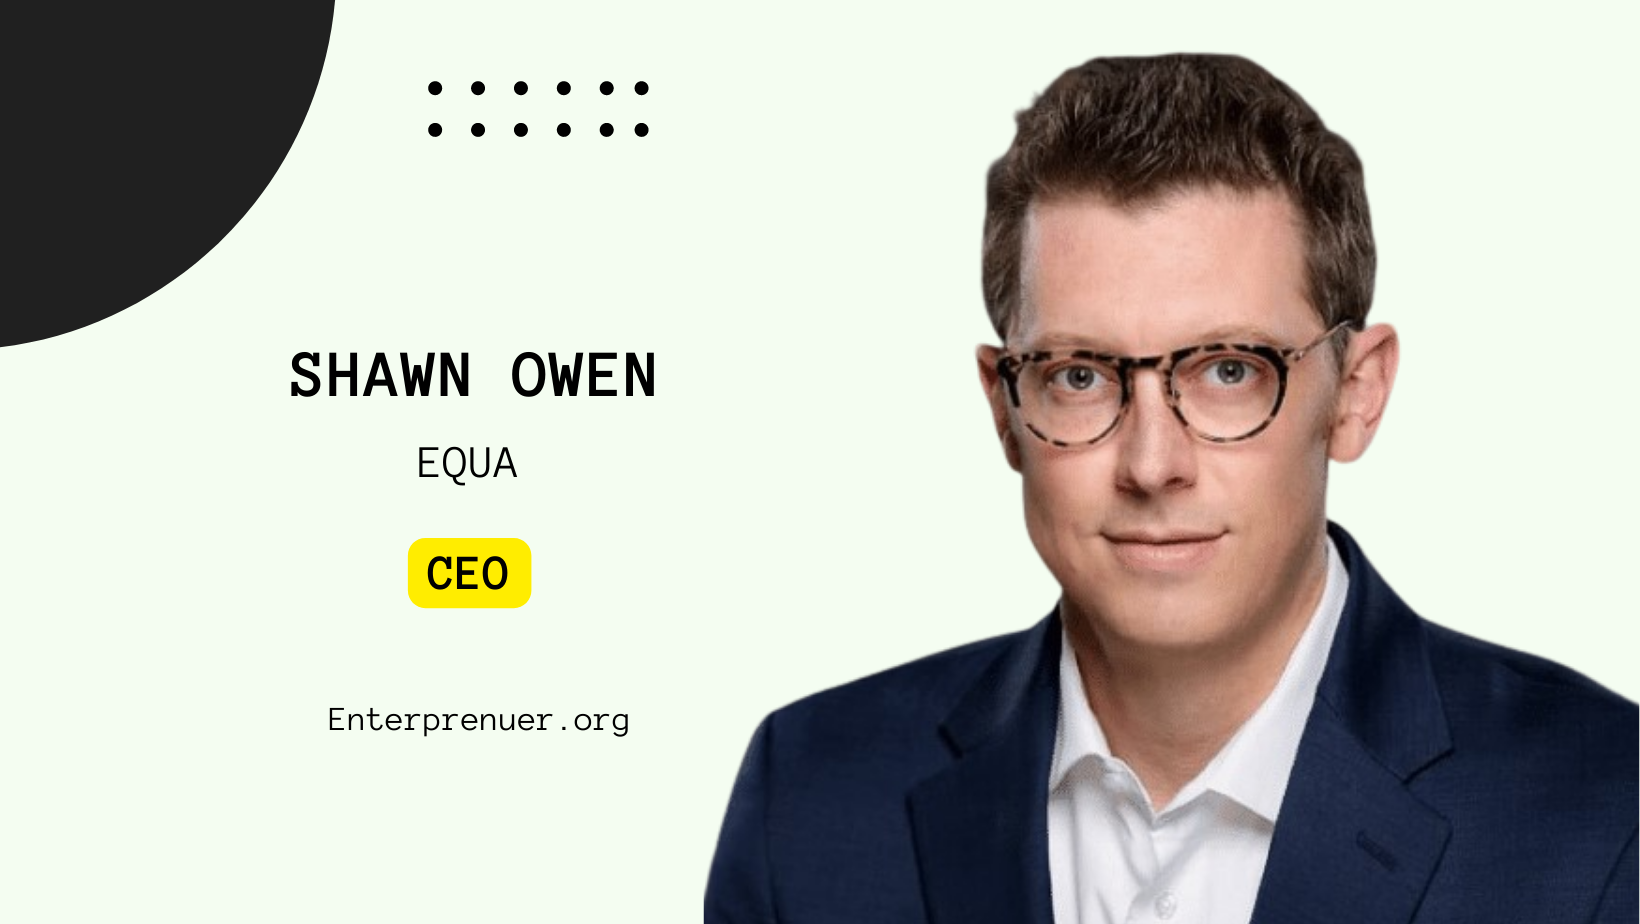 Shawn Owen CEO of Equa